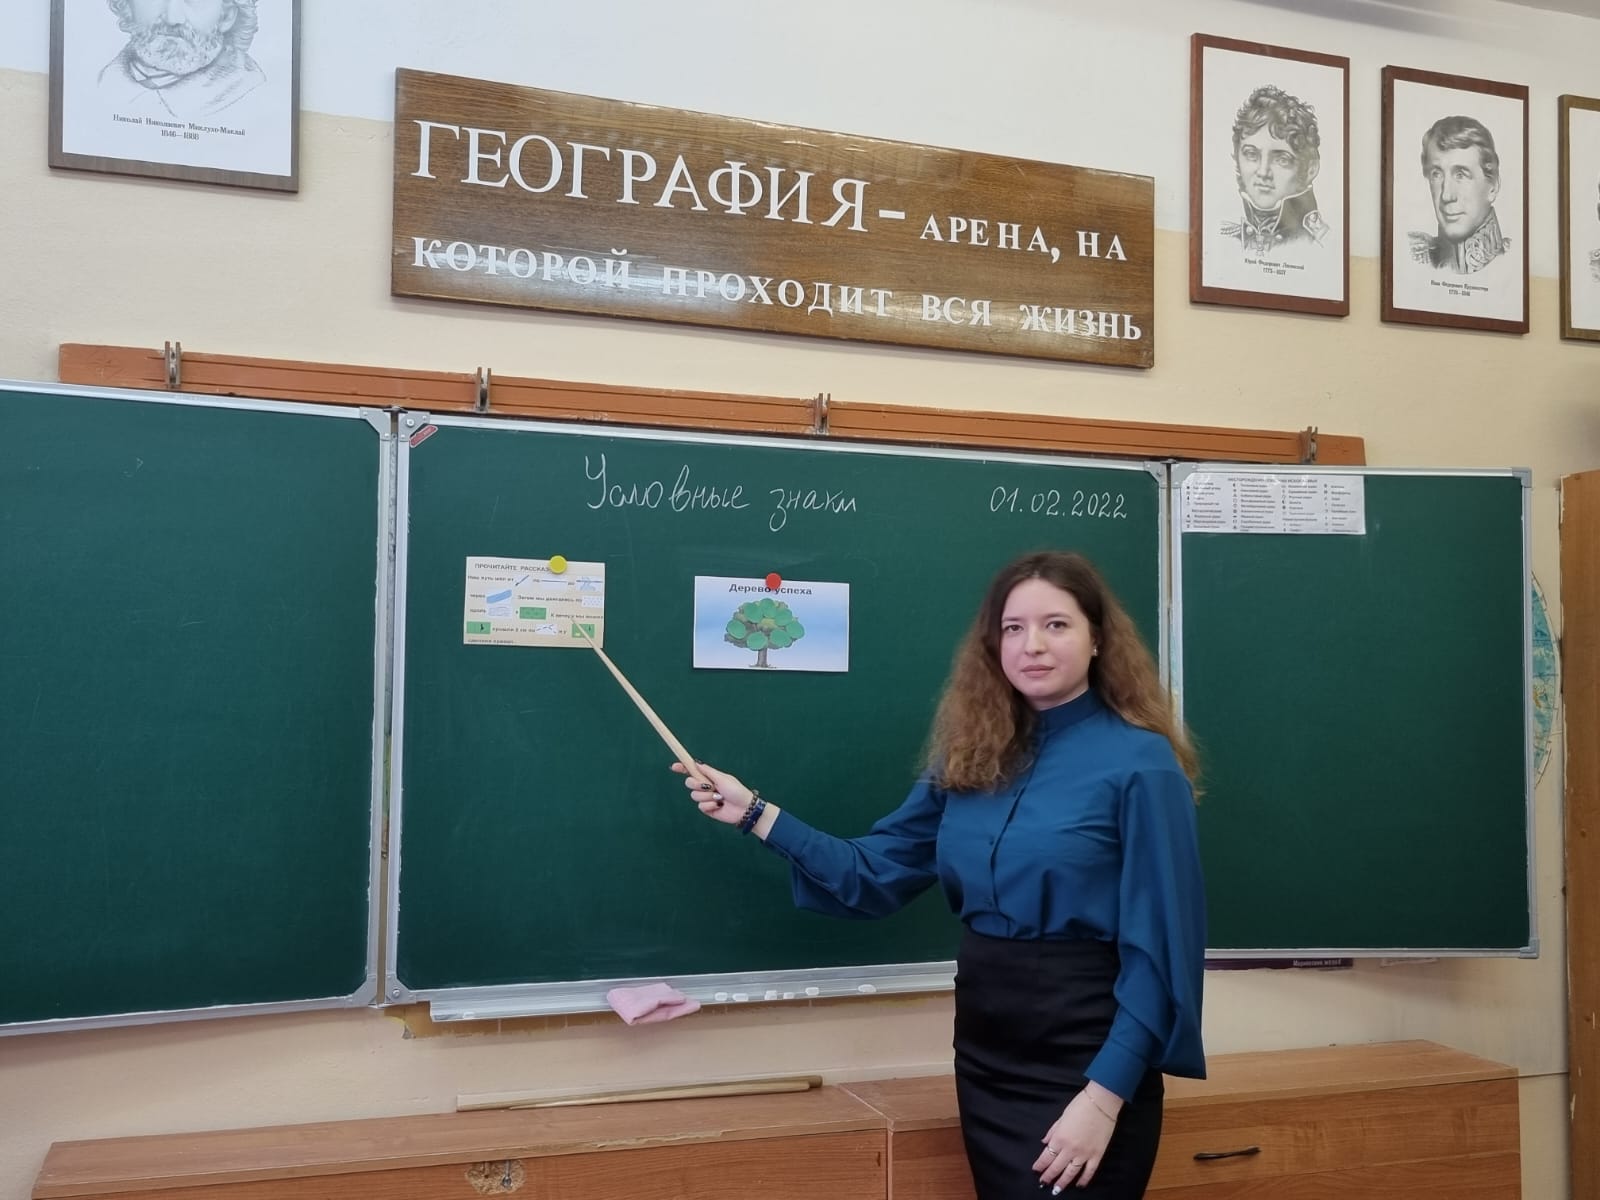 12 вакансий по программе «Земский учитель» в этом году открыли в Ярославской области